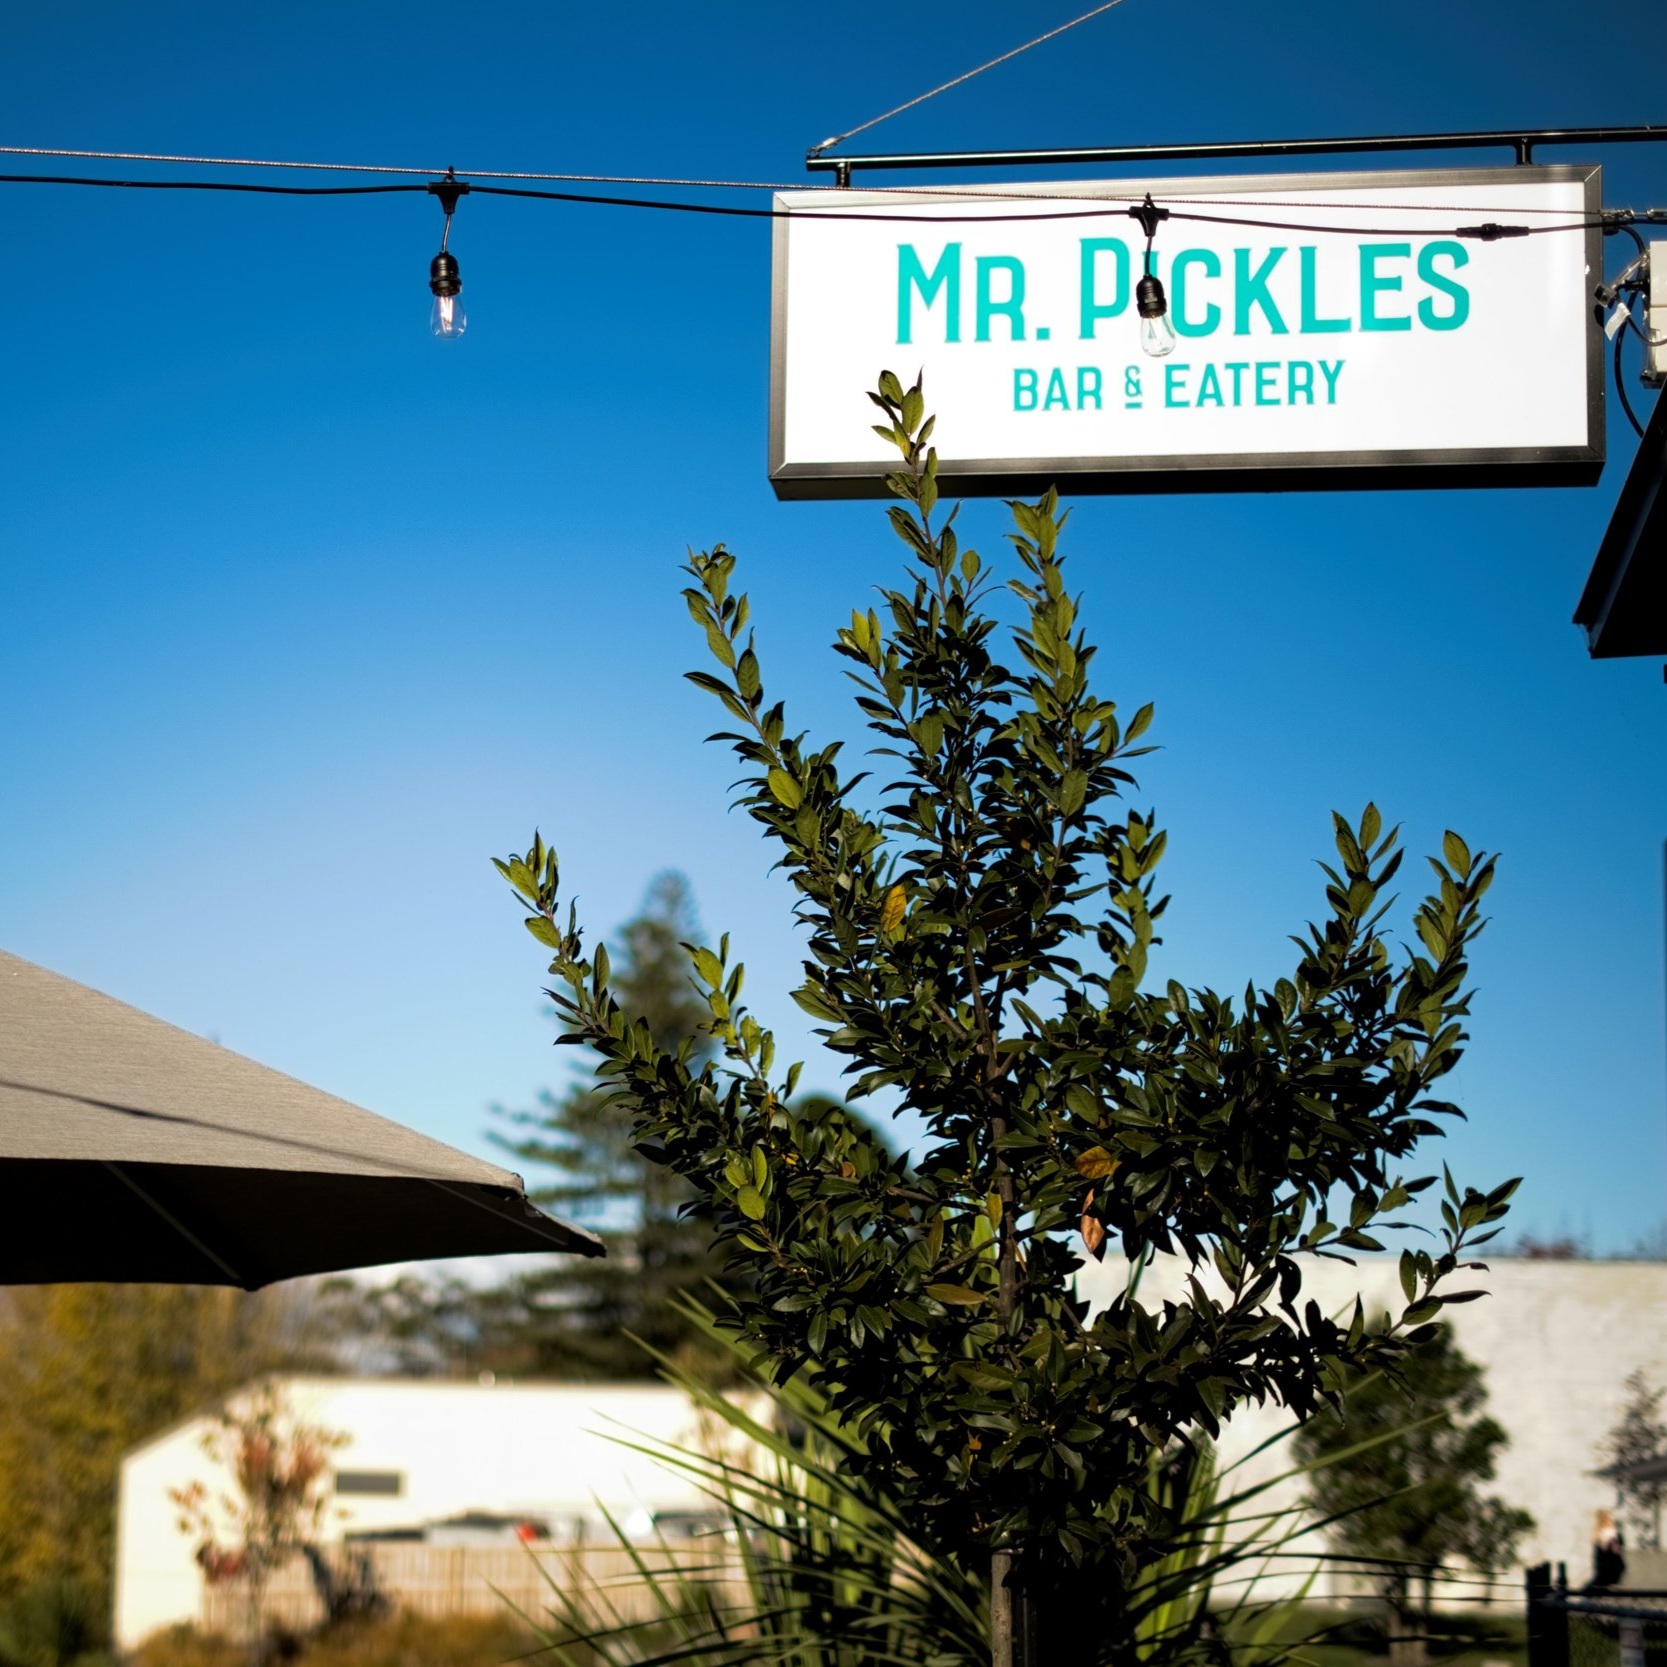 Mr. Pickles Bar & Eatery